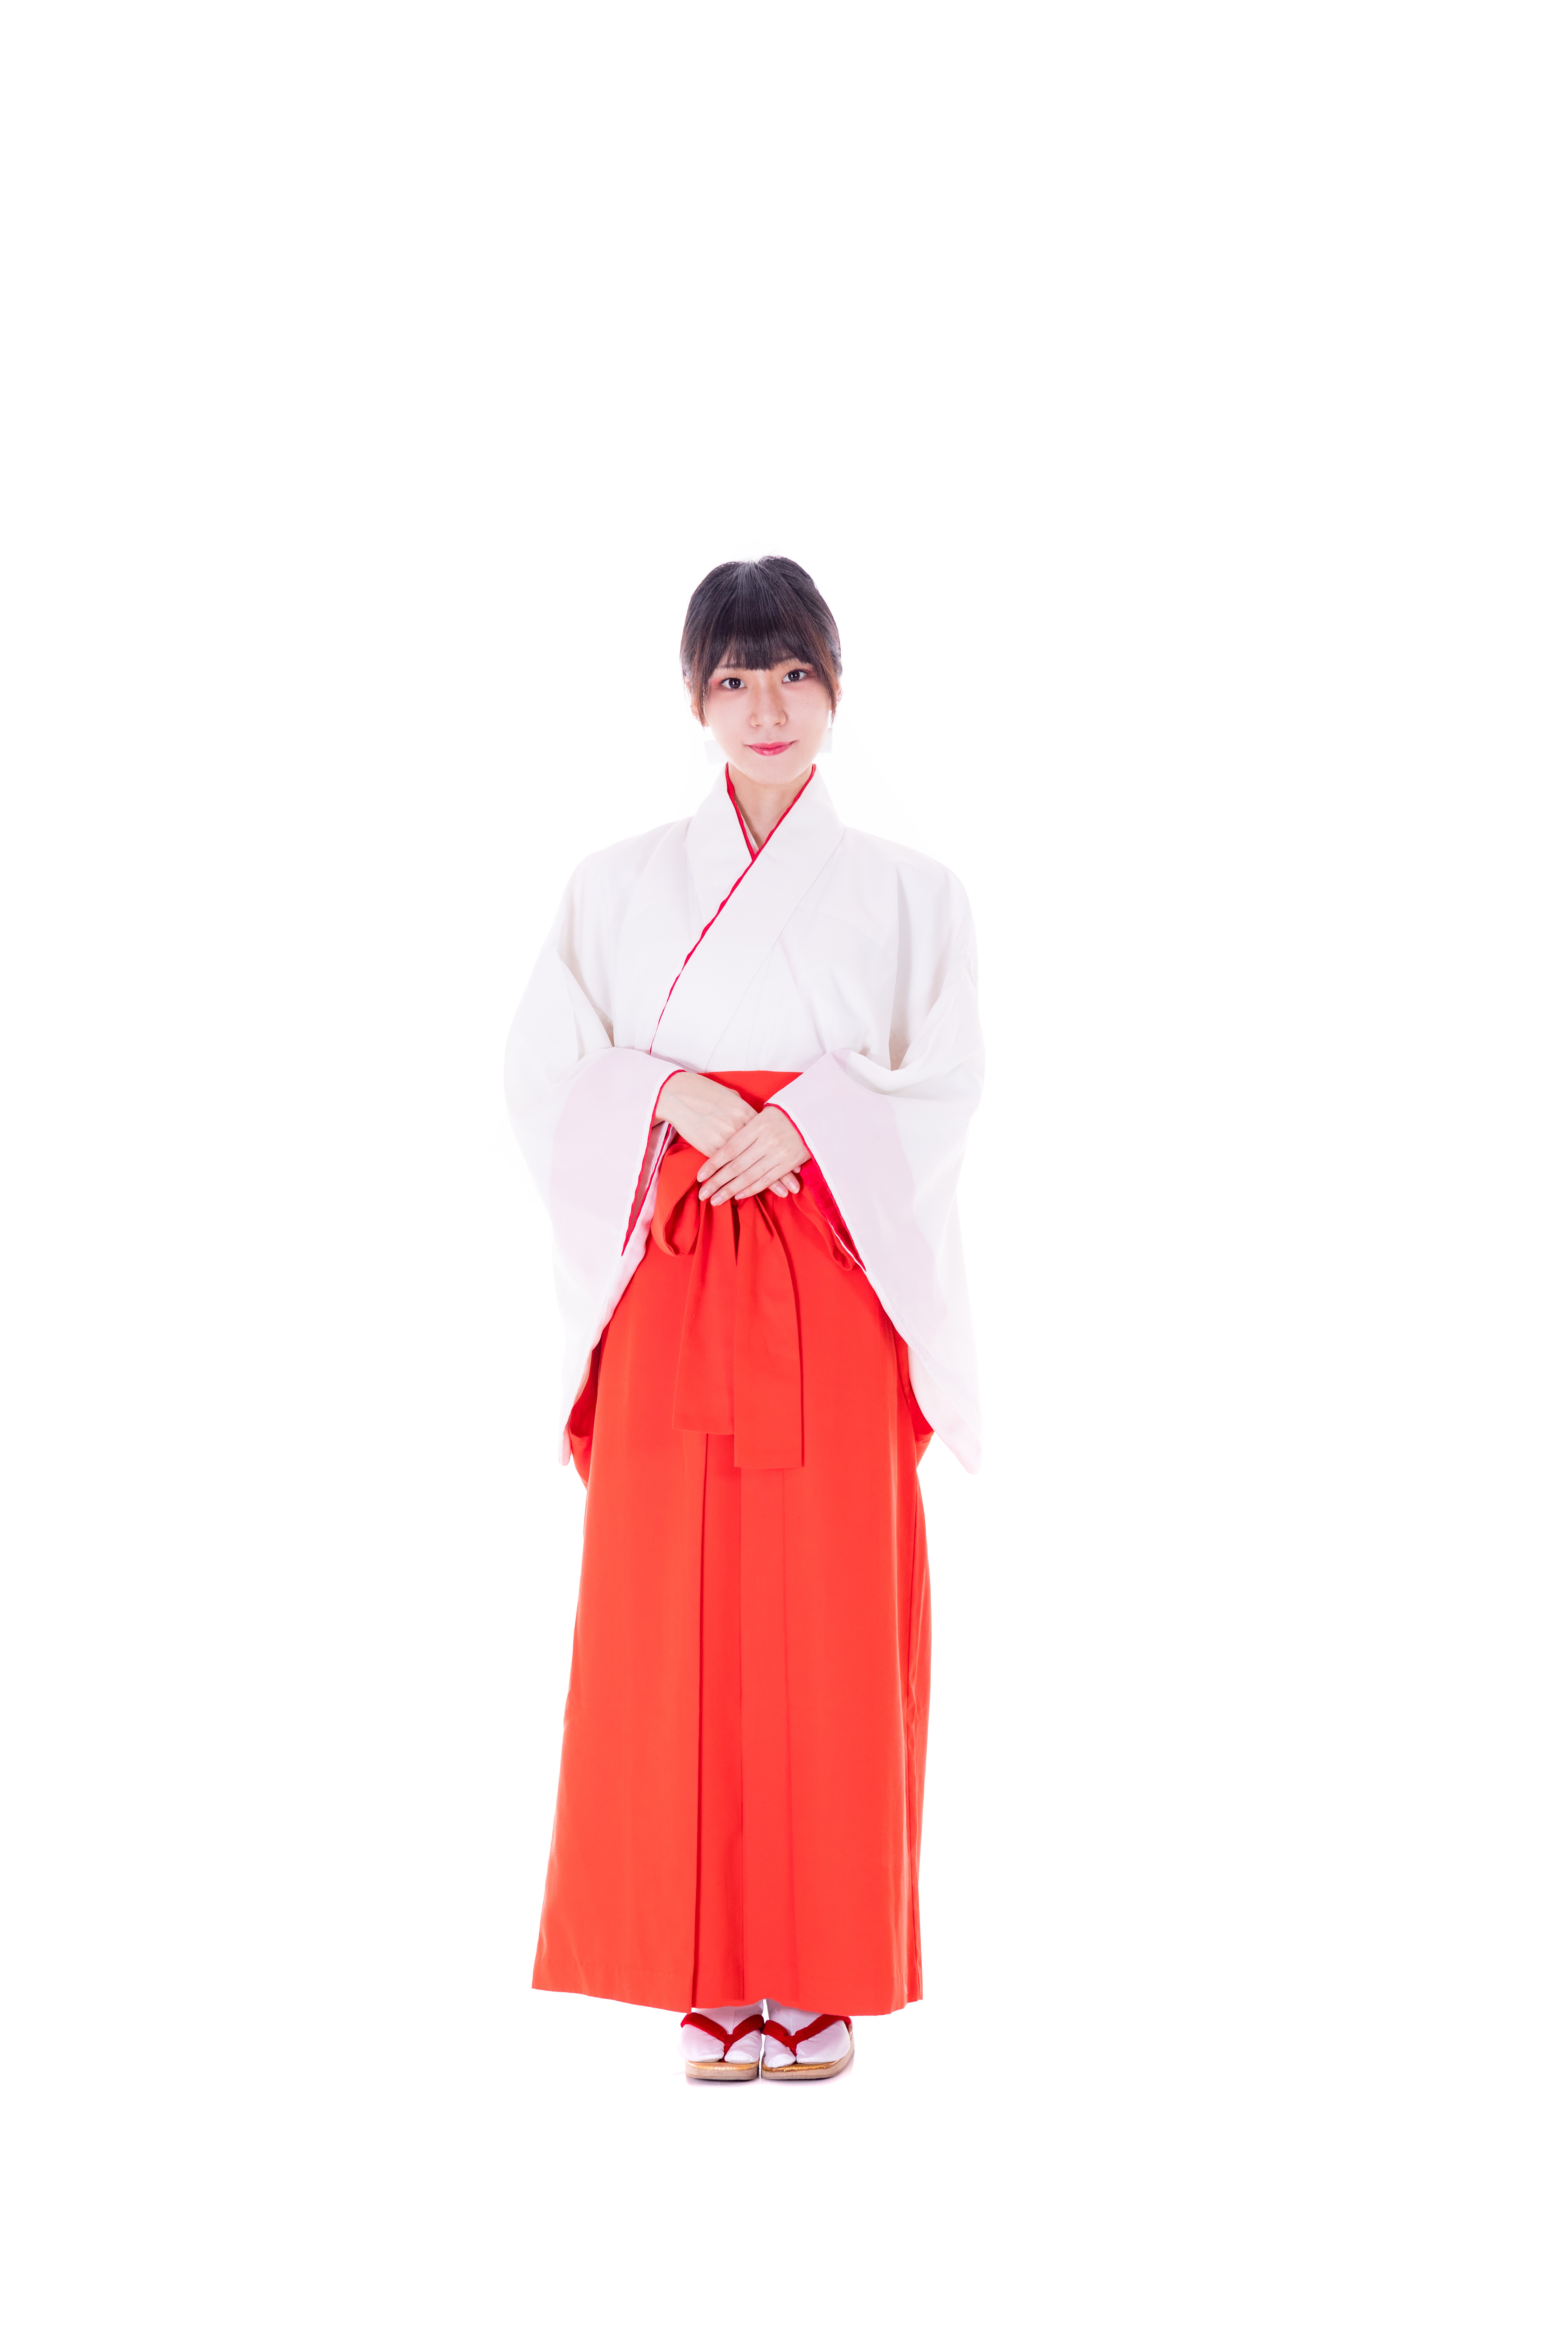 Gambar : gadis, pakaian, kostum, kimono, cosplay 4480x6720 - Puosst ...